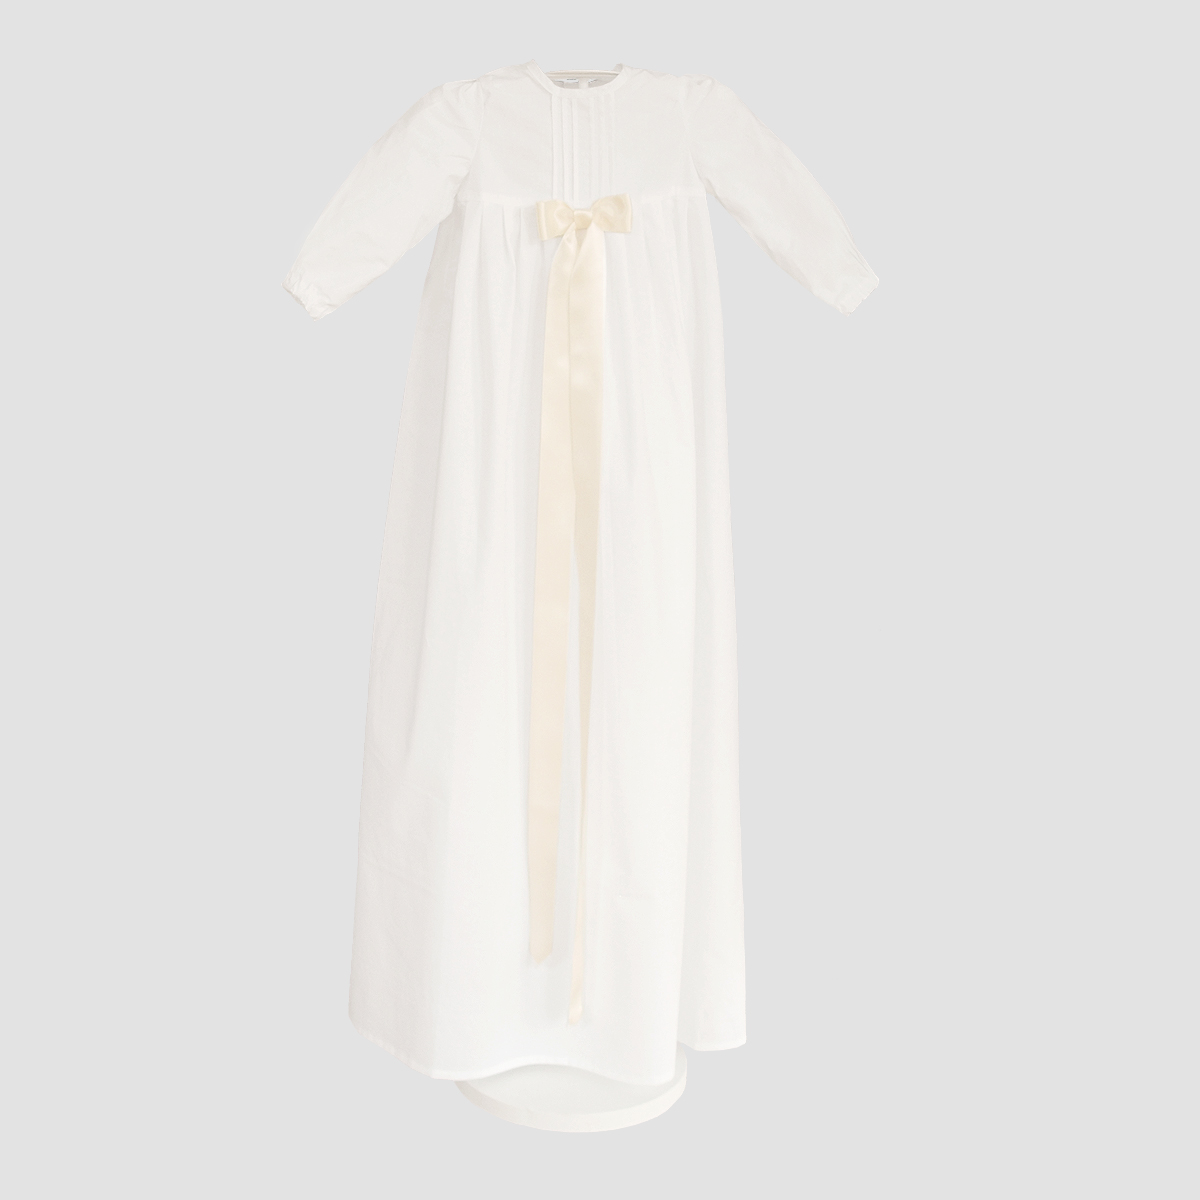 Minimundus dopklänning av 100% ekologisk bomull med breda cremefärgade satinband